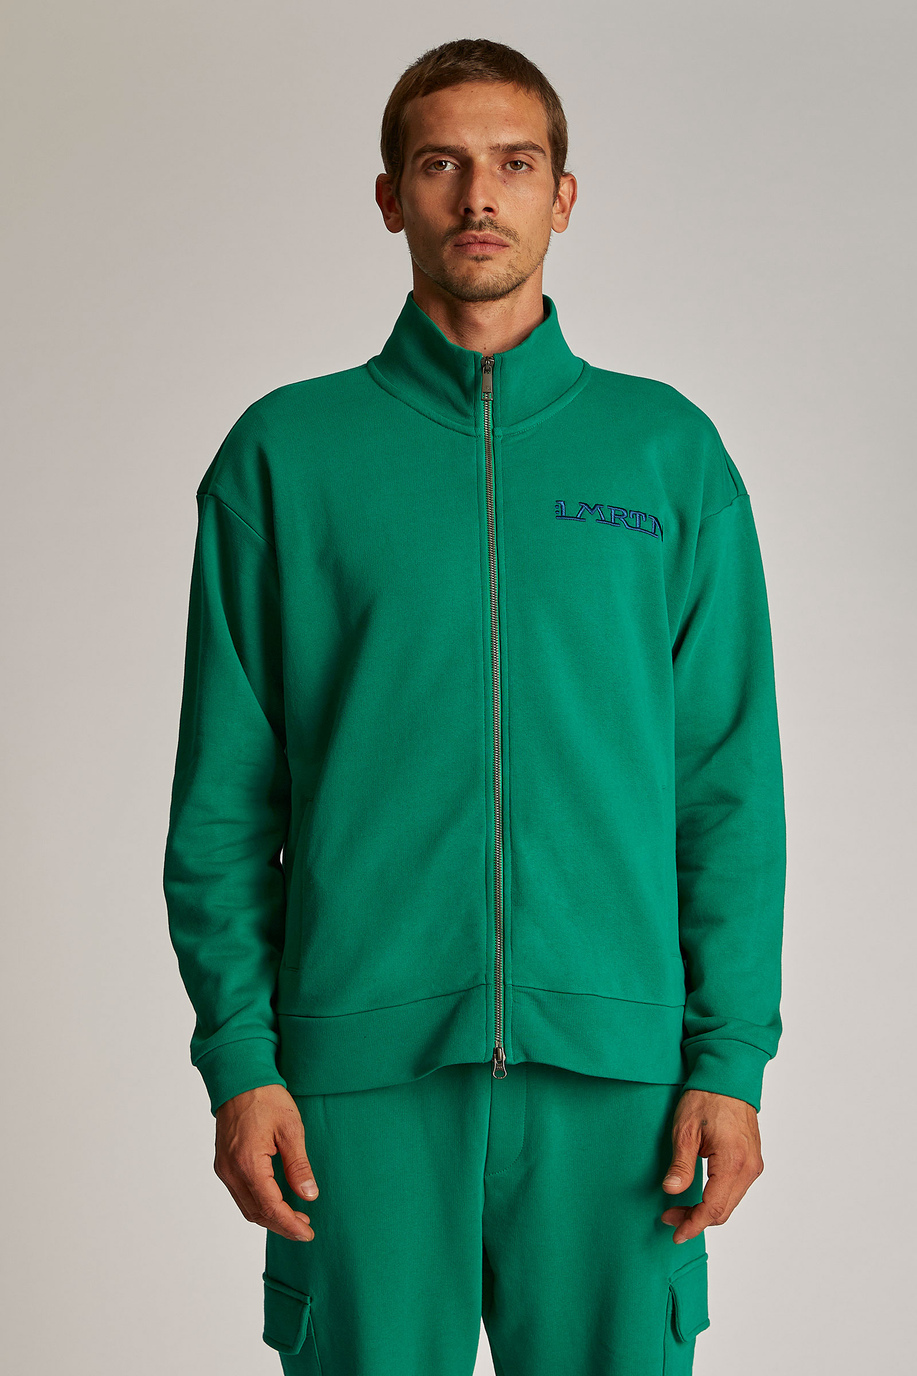 Men's oversized zip-up sweatshirt in 100% cotton fabric - Inspiration | La Martina - Official Online Shop